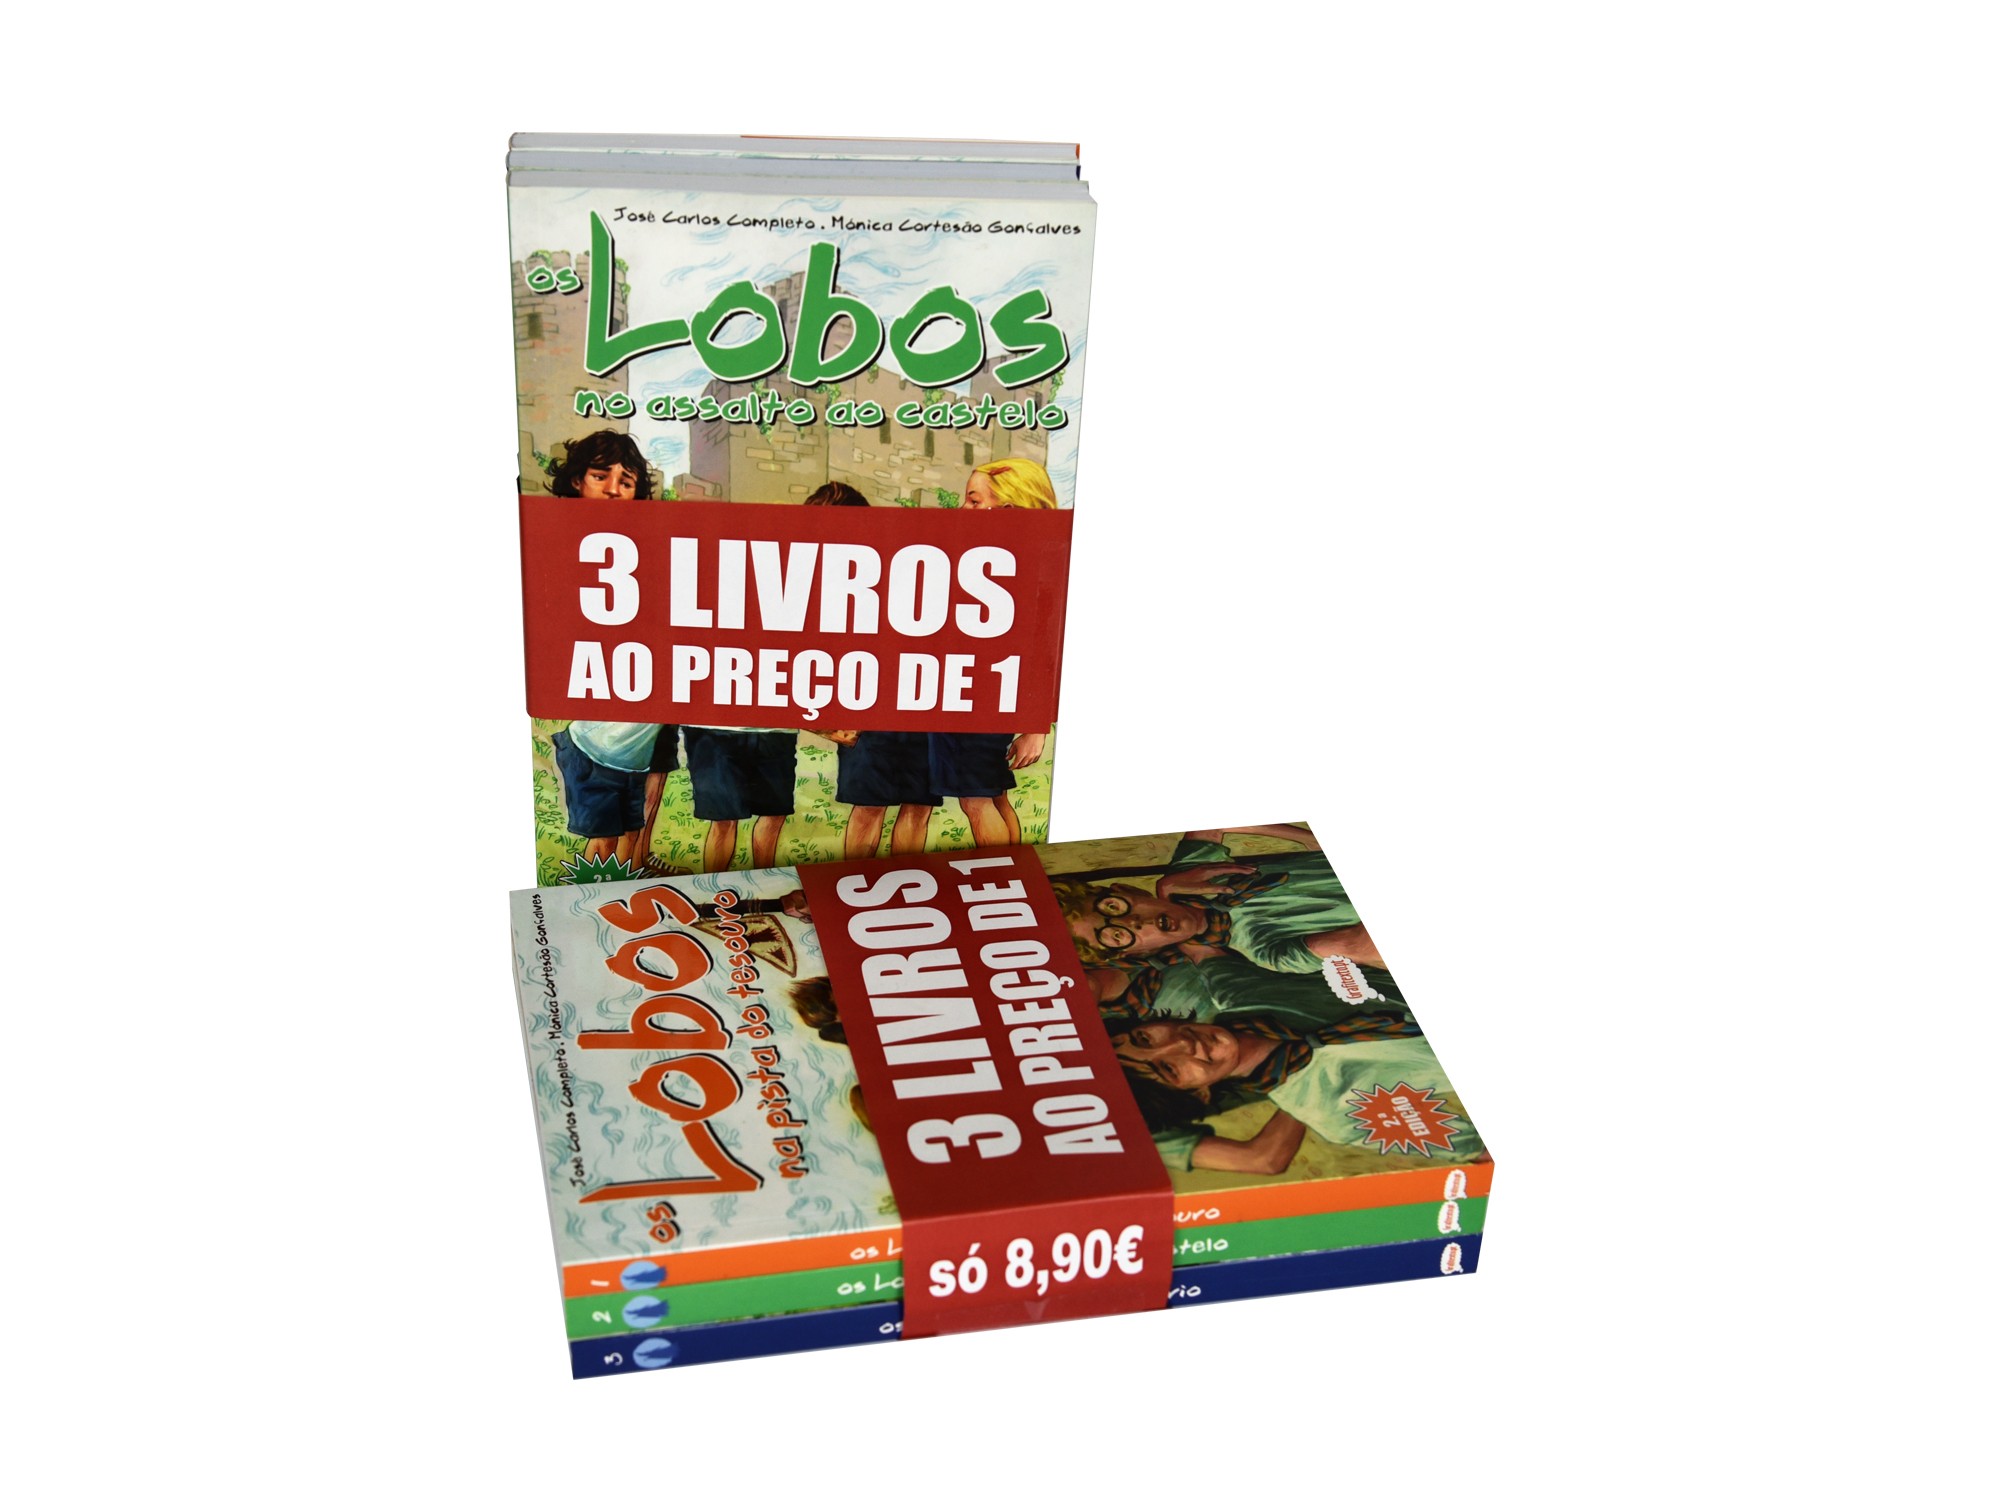 Pack 3 livros coleção "Lobos"